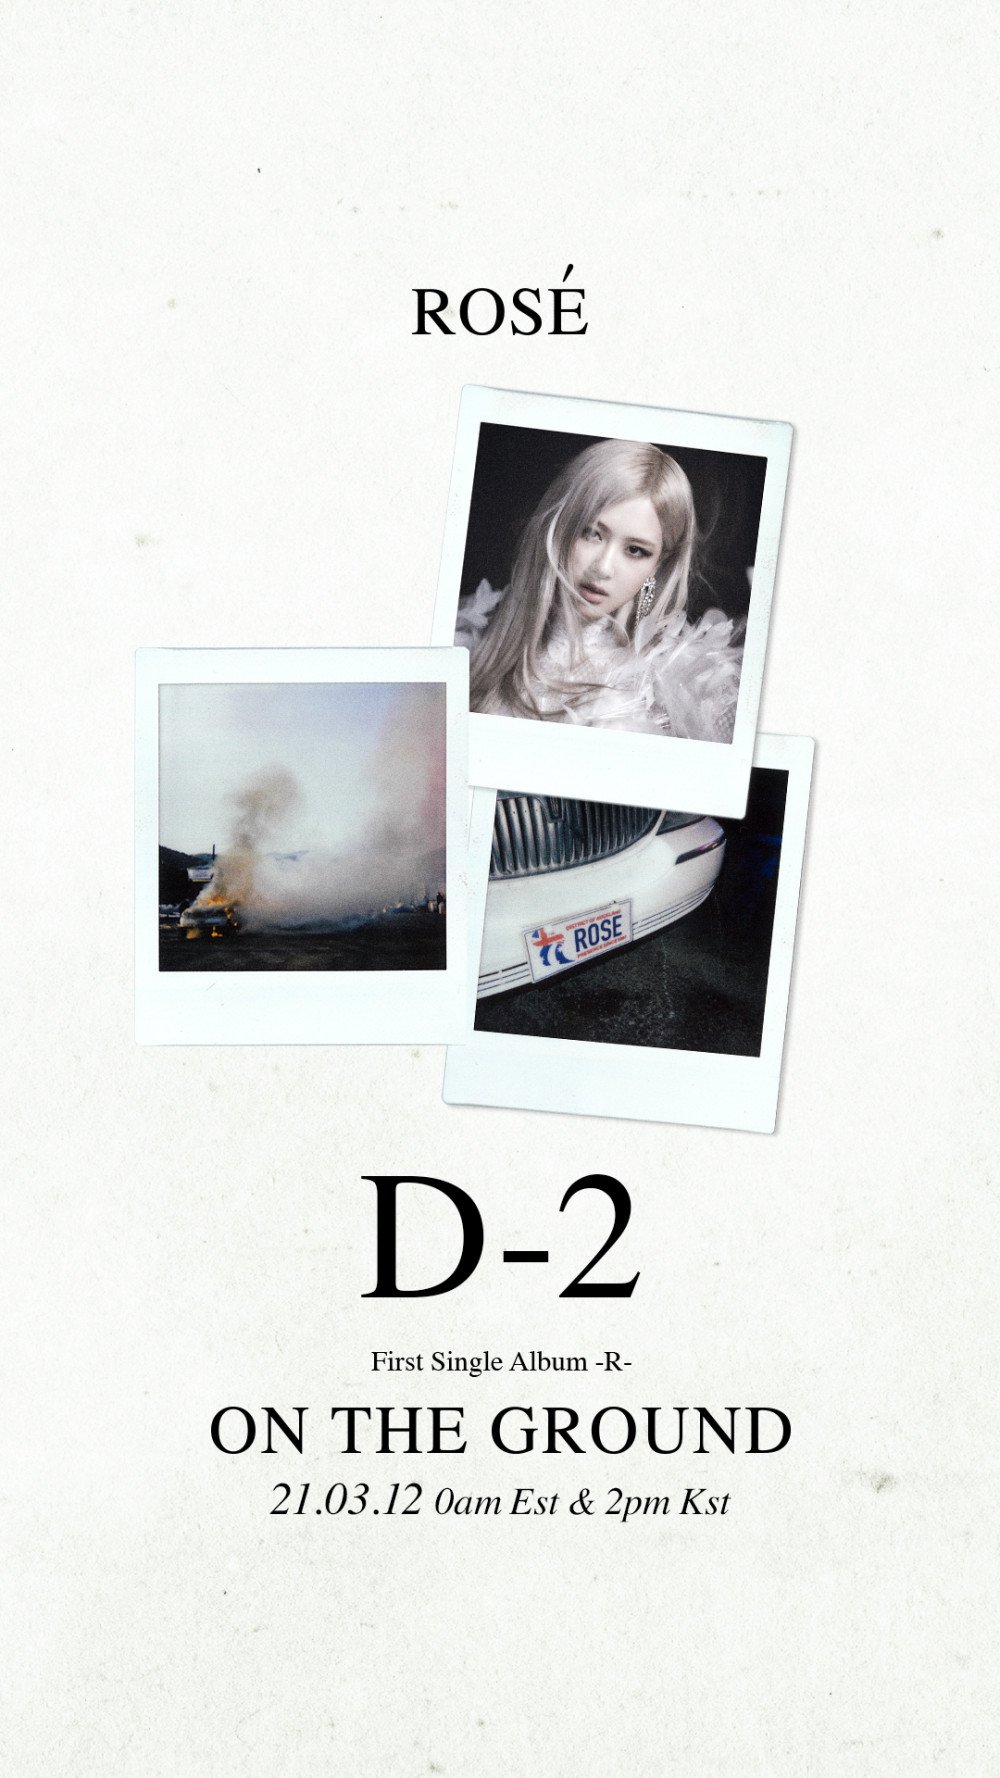 Rosé de BLACKPINK realiza cuenta regresiva para su debut en solitario con el teaser de D-2 para '-R-'